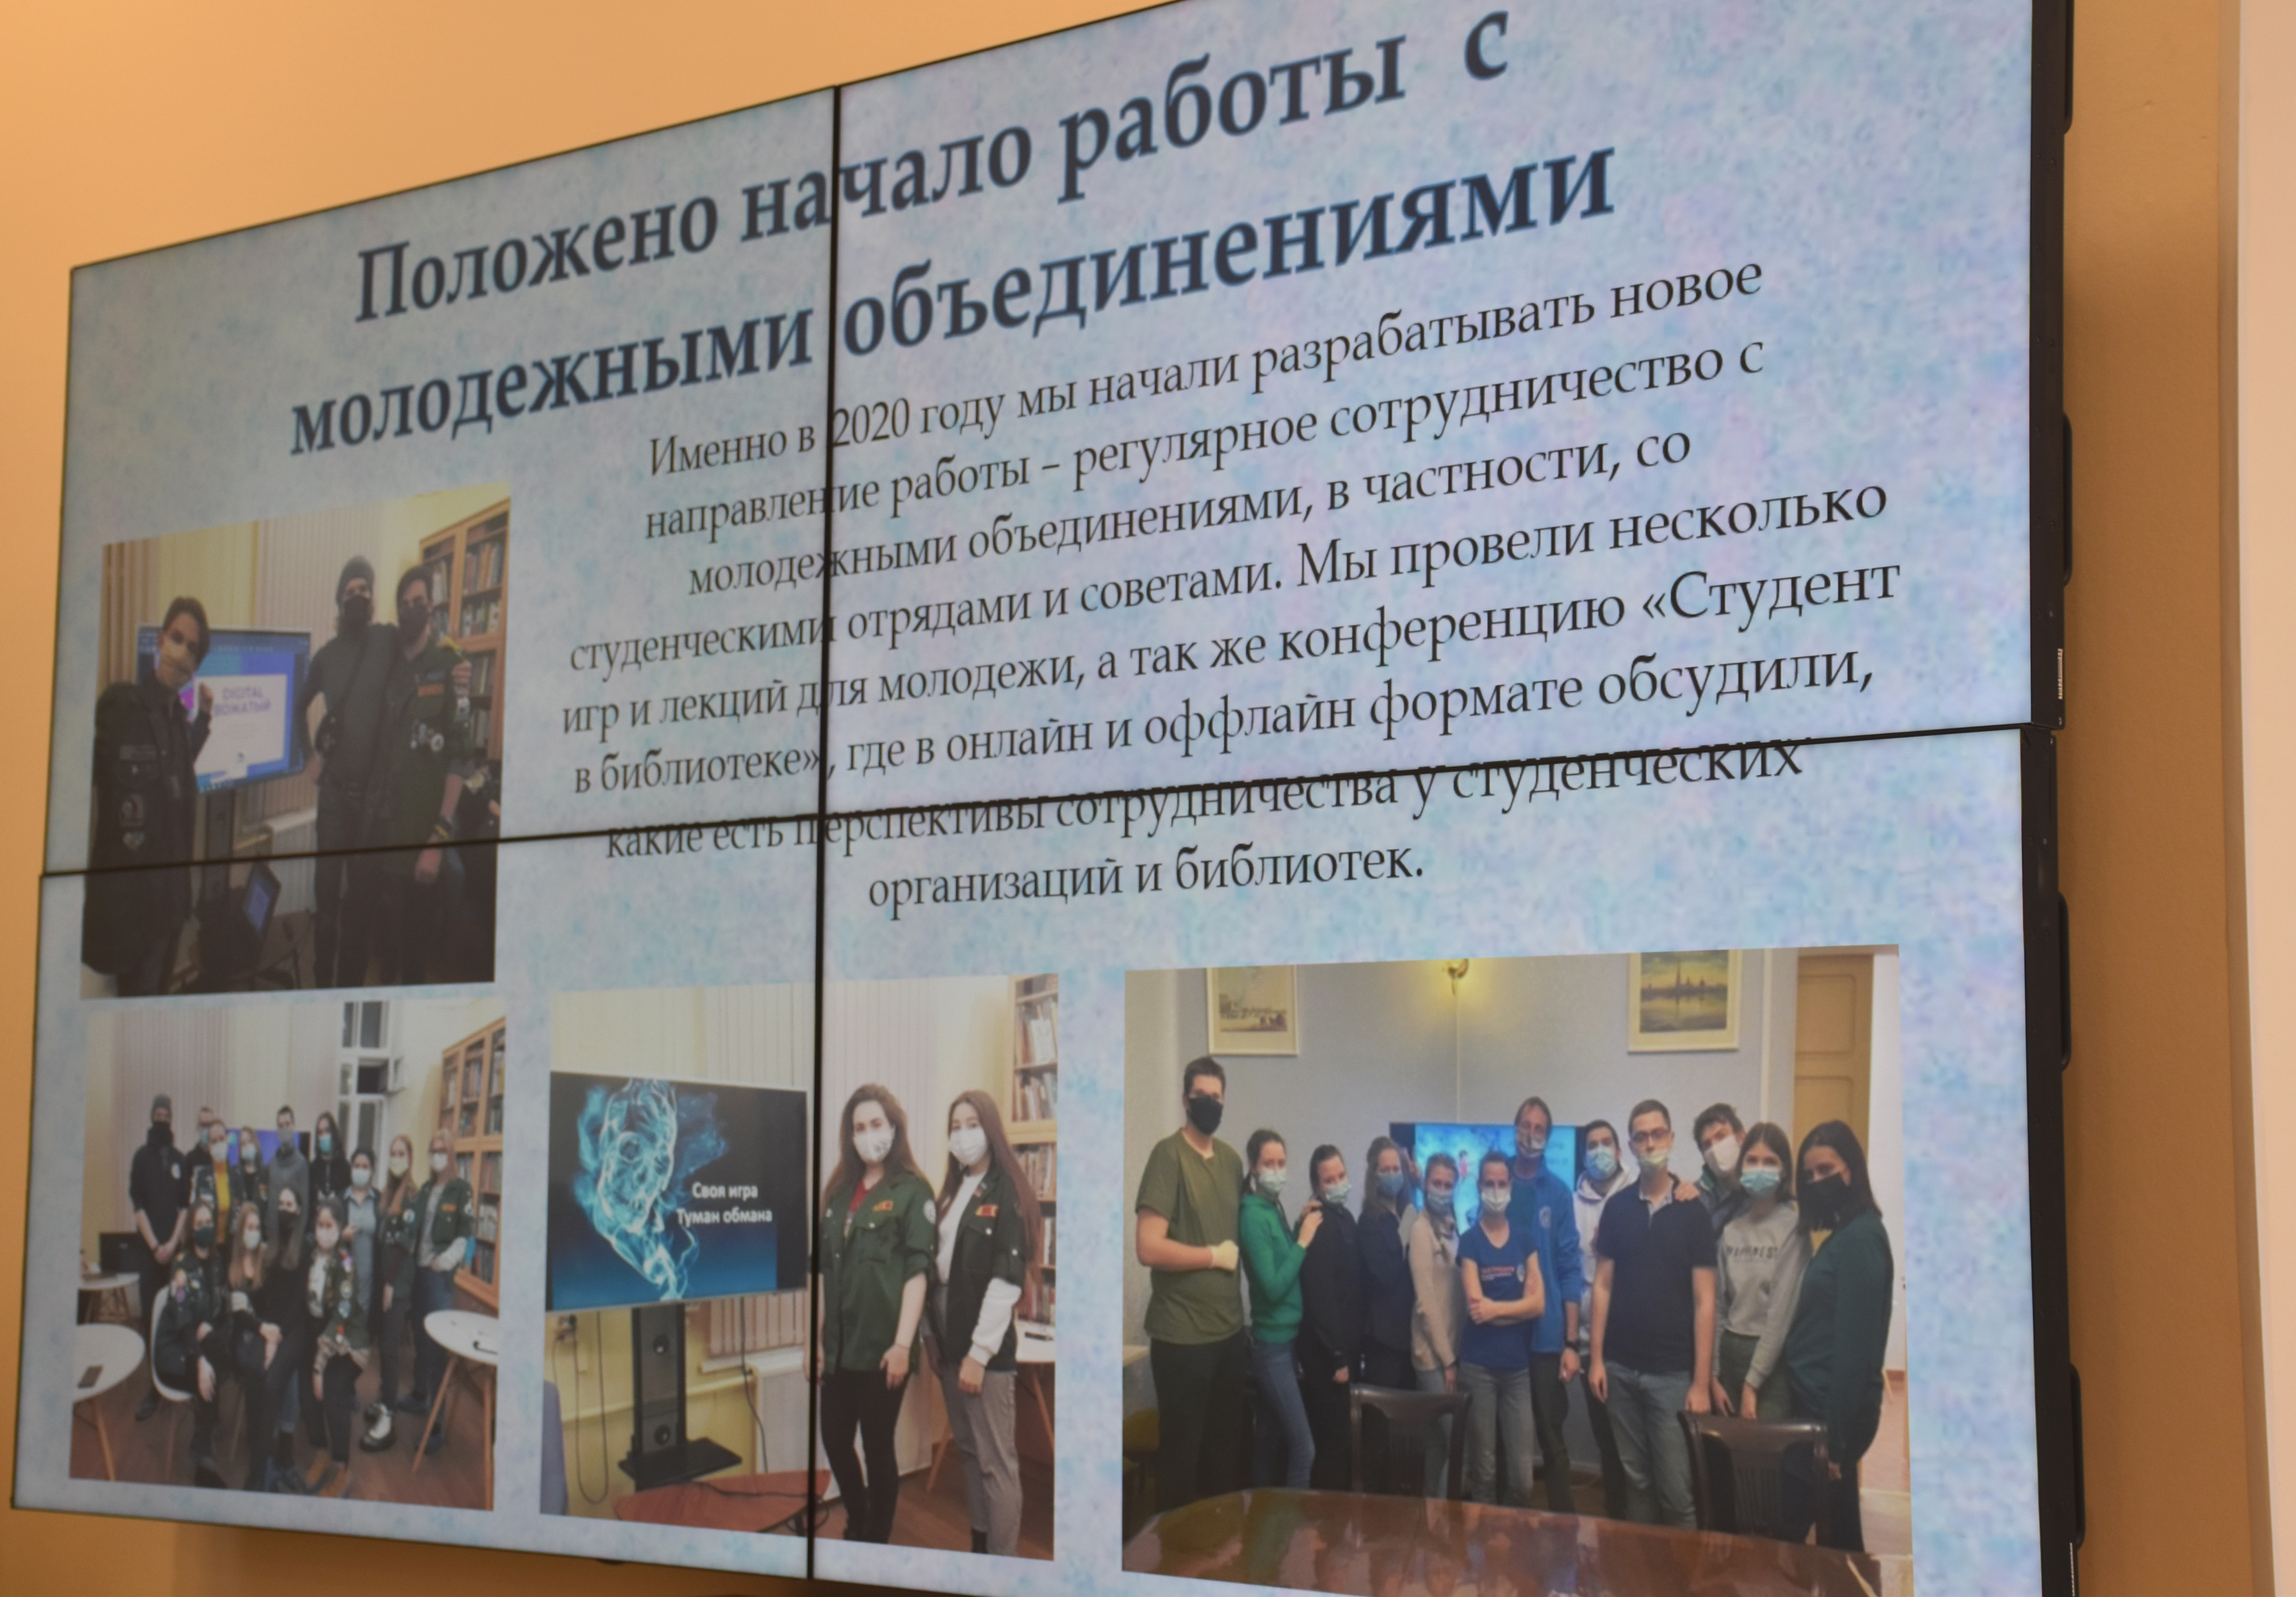 25 февраля в библиотеке Ленина (ул. Воскова, д.2) состоялся ежегодный Публичный отчет Централизованной библиотечной системы Петроградского района.